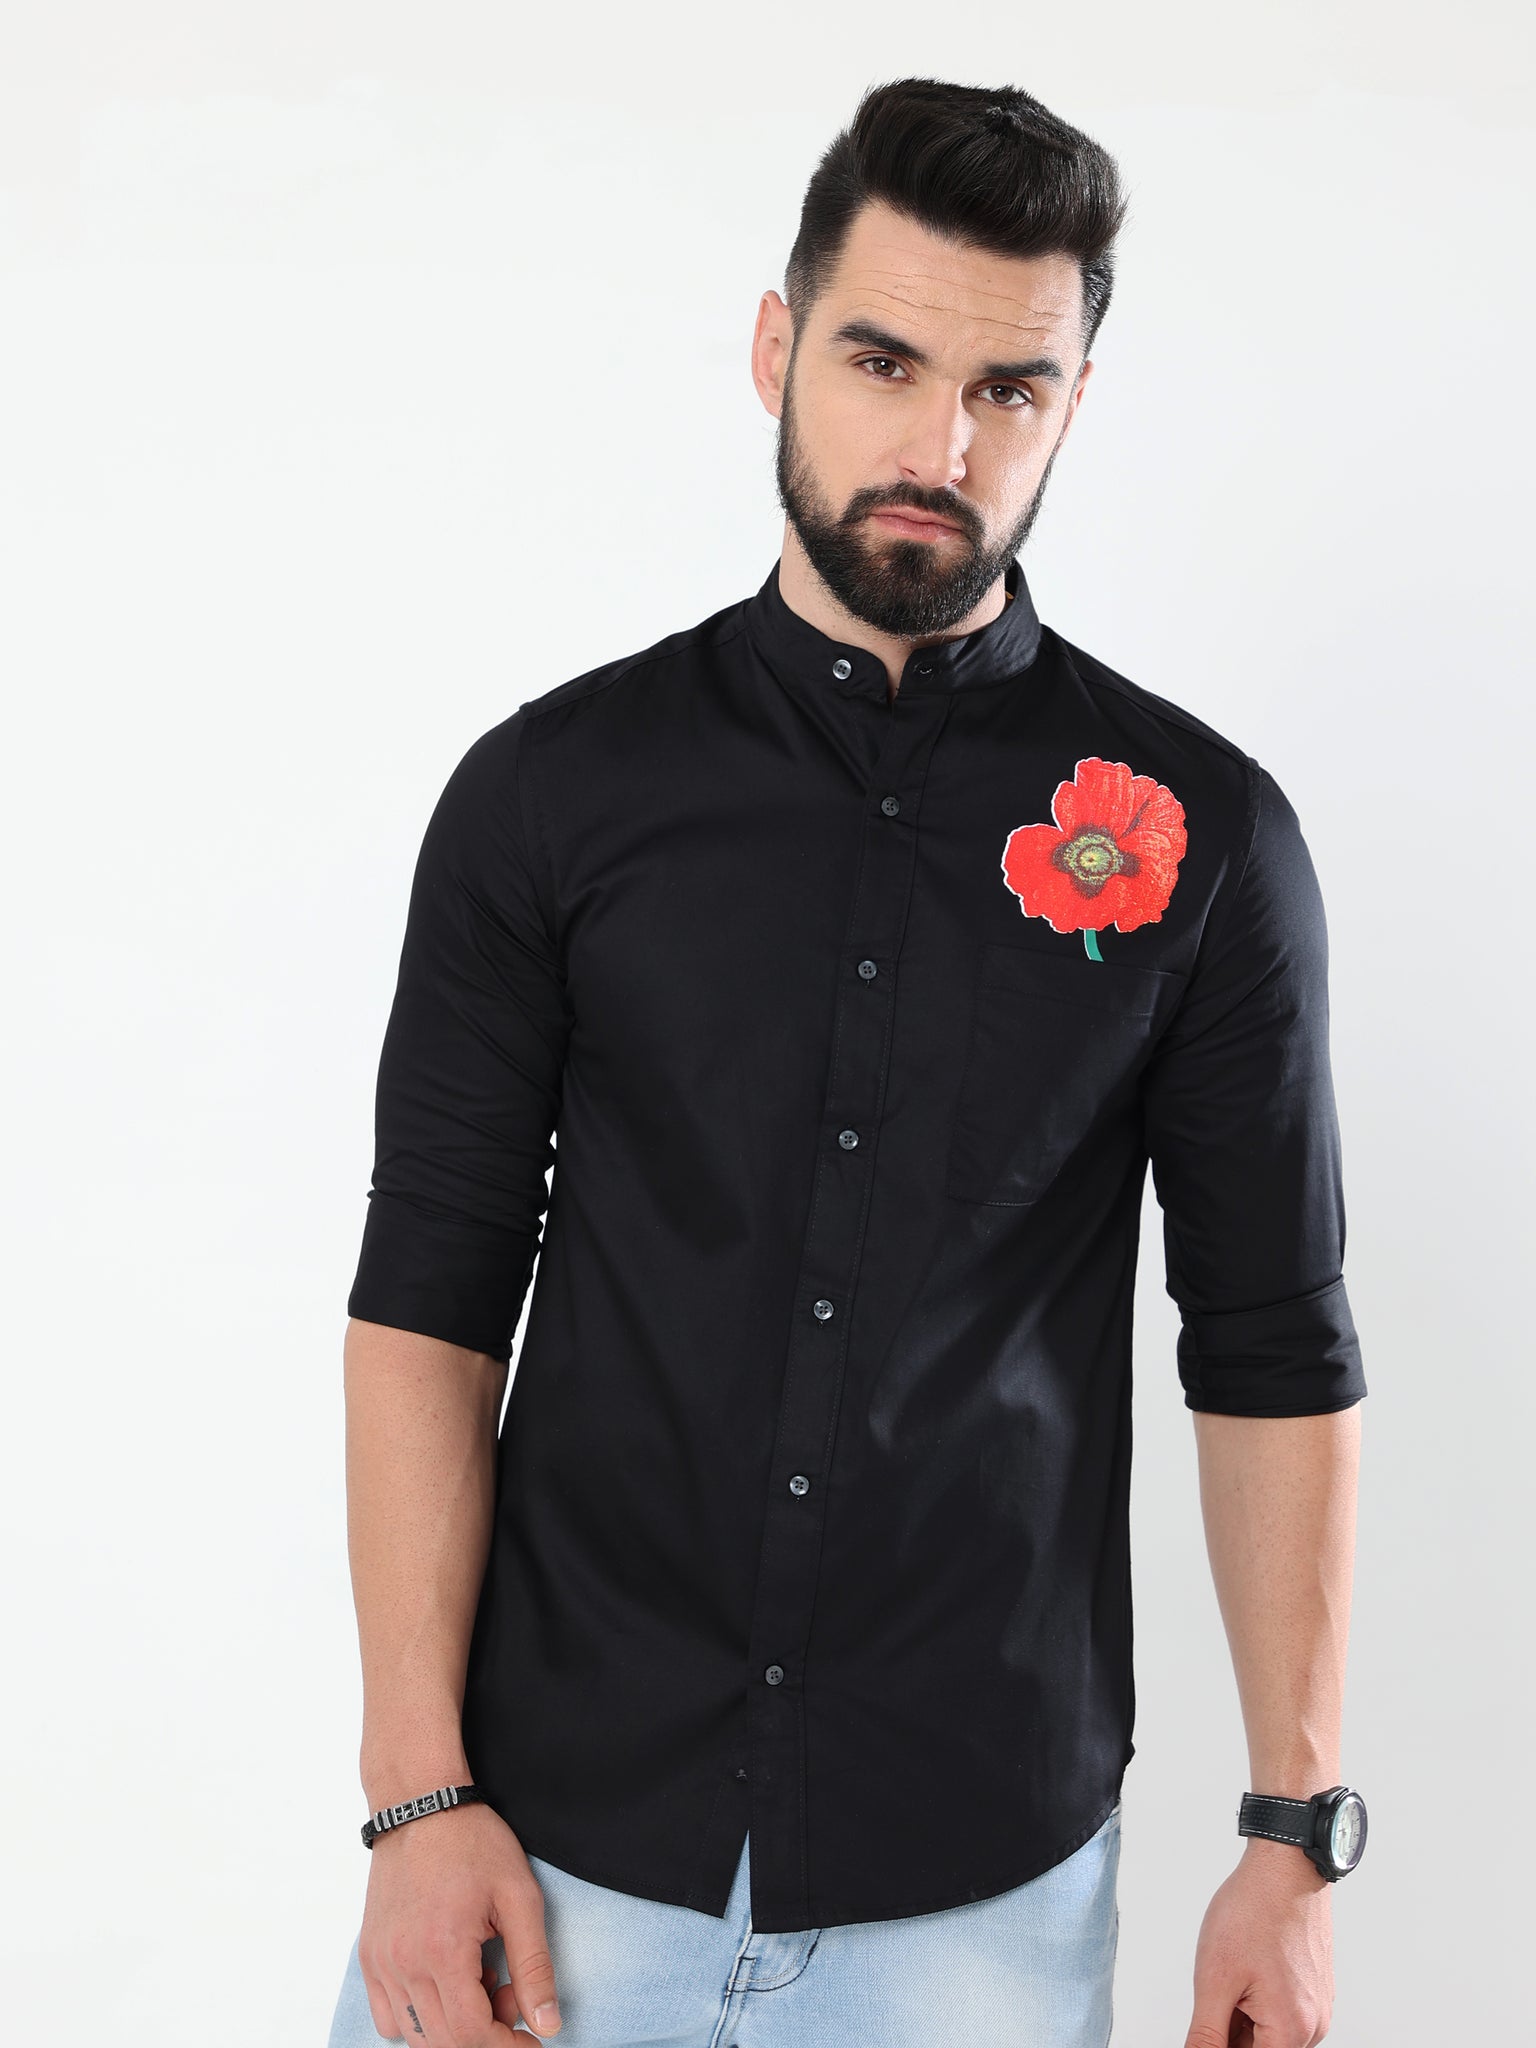 Poppy Print Black Shirt